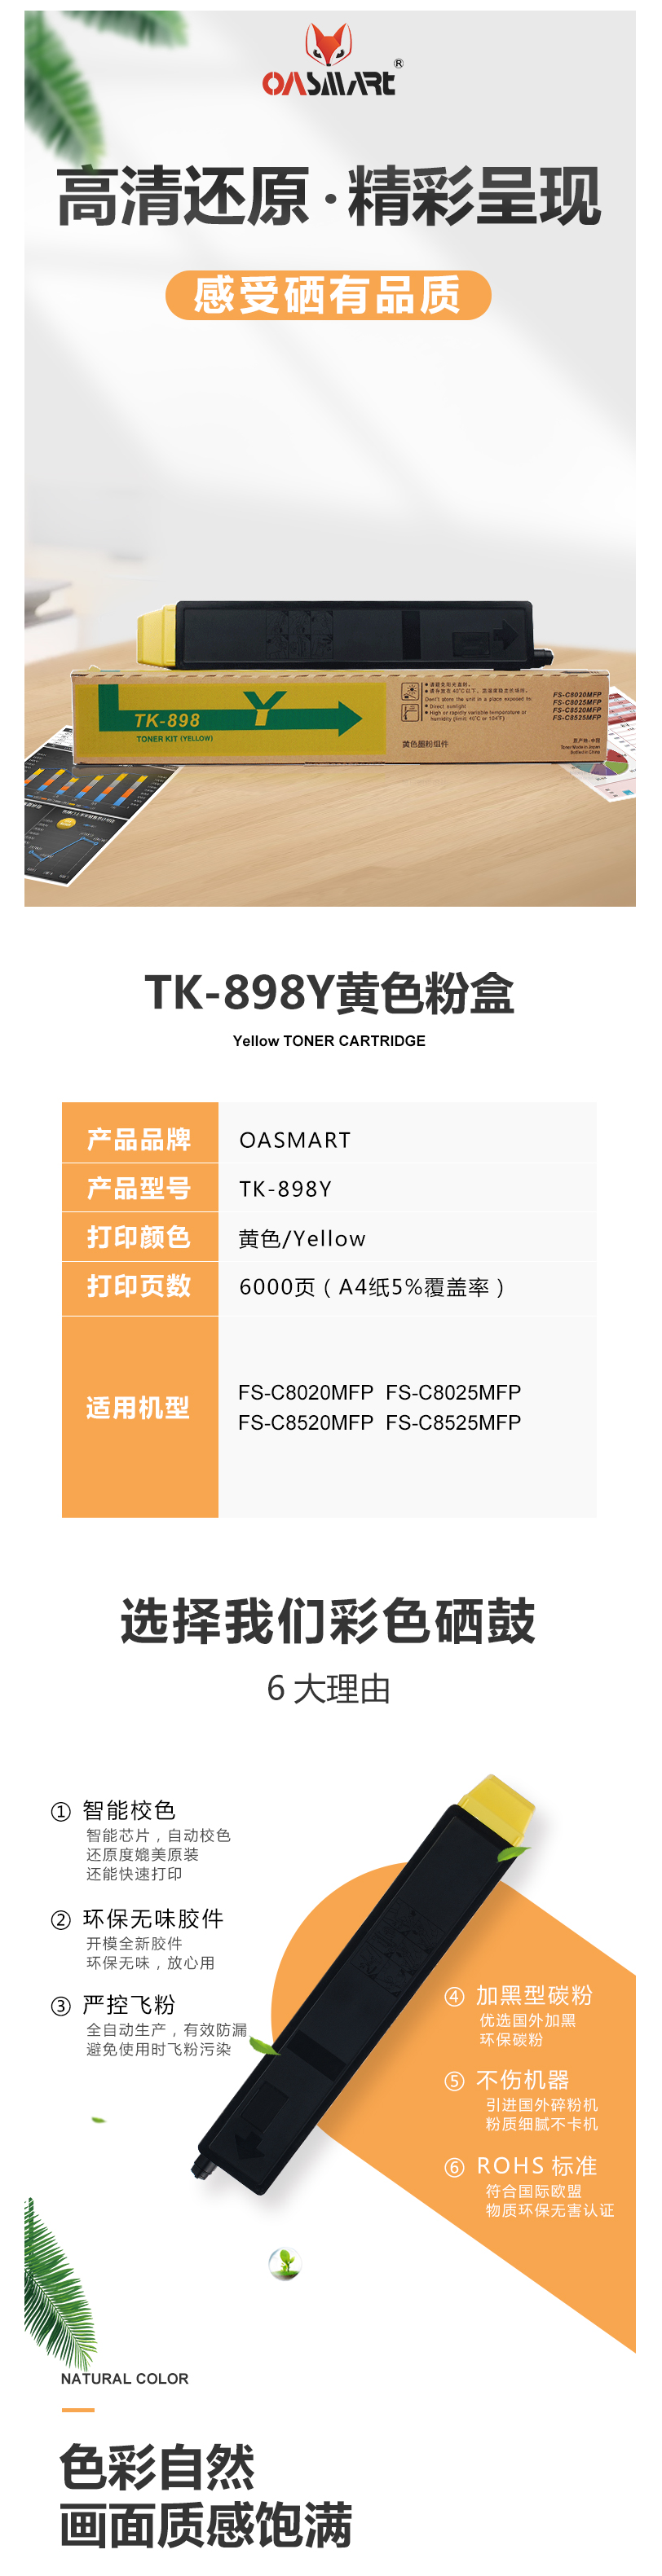 FireShot Capture 322 - 【OASMARTTK-898Y】OASMART（欧司特）TK-898Y _ - https___item.jd.com_100016360044.html.png